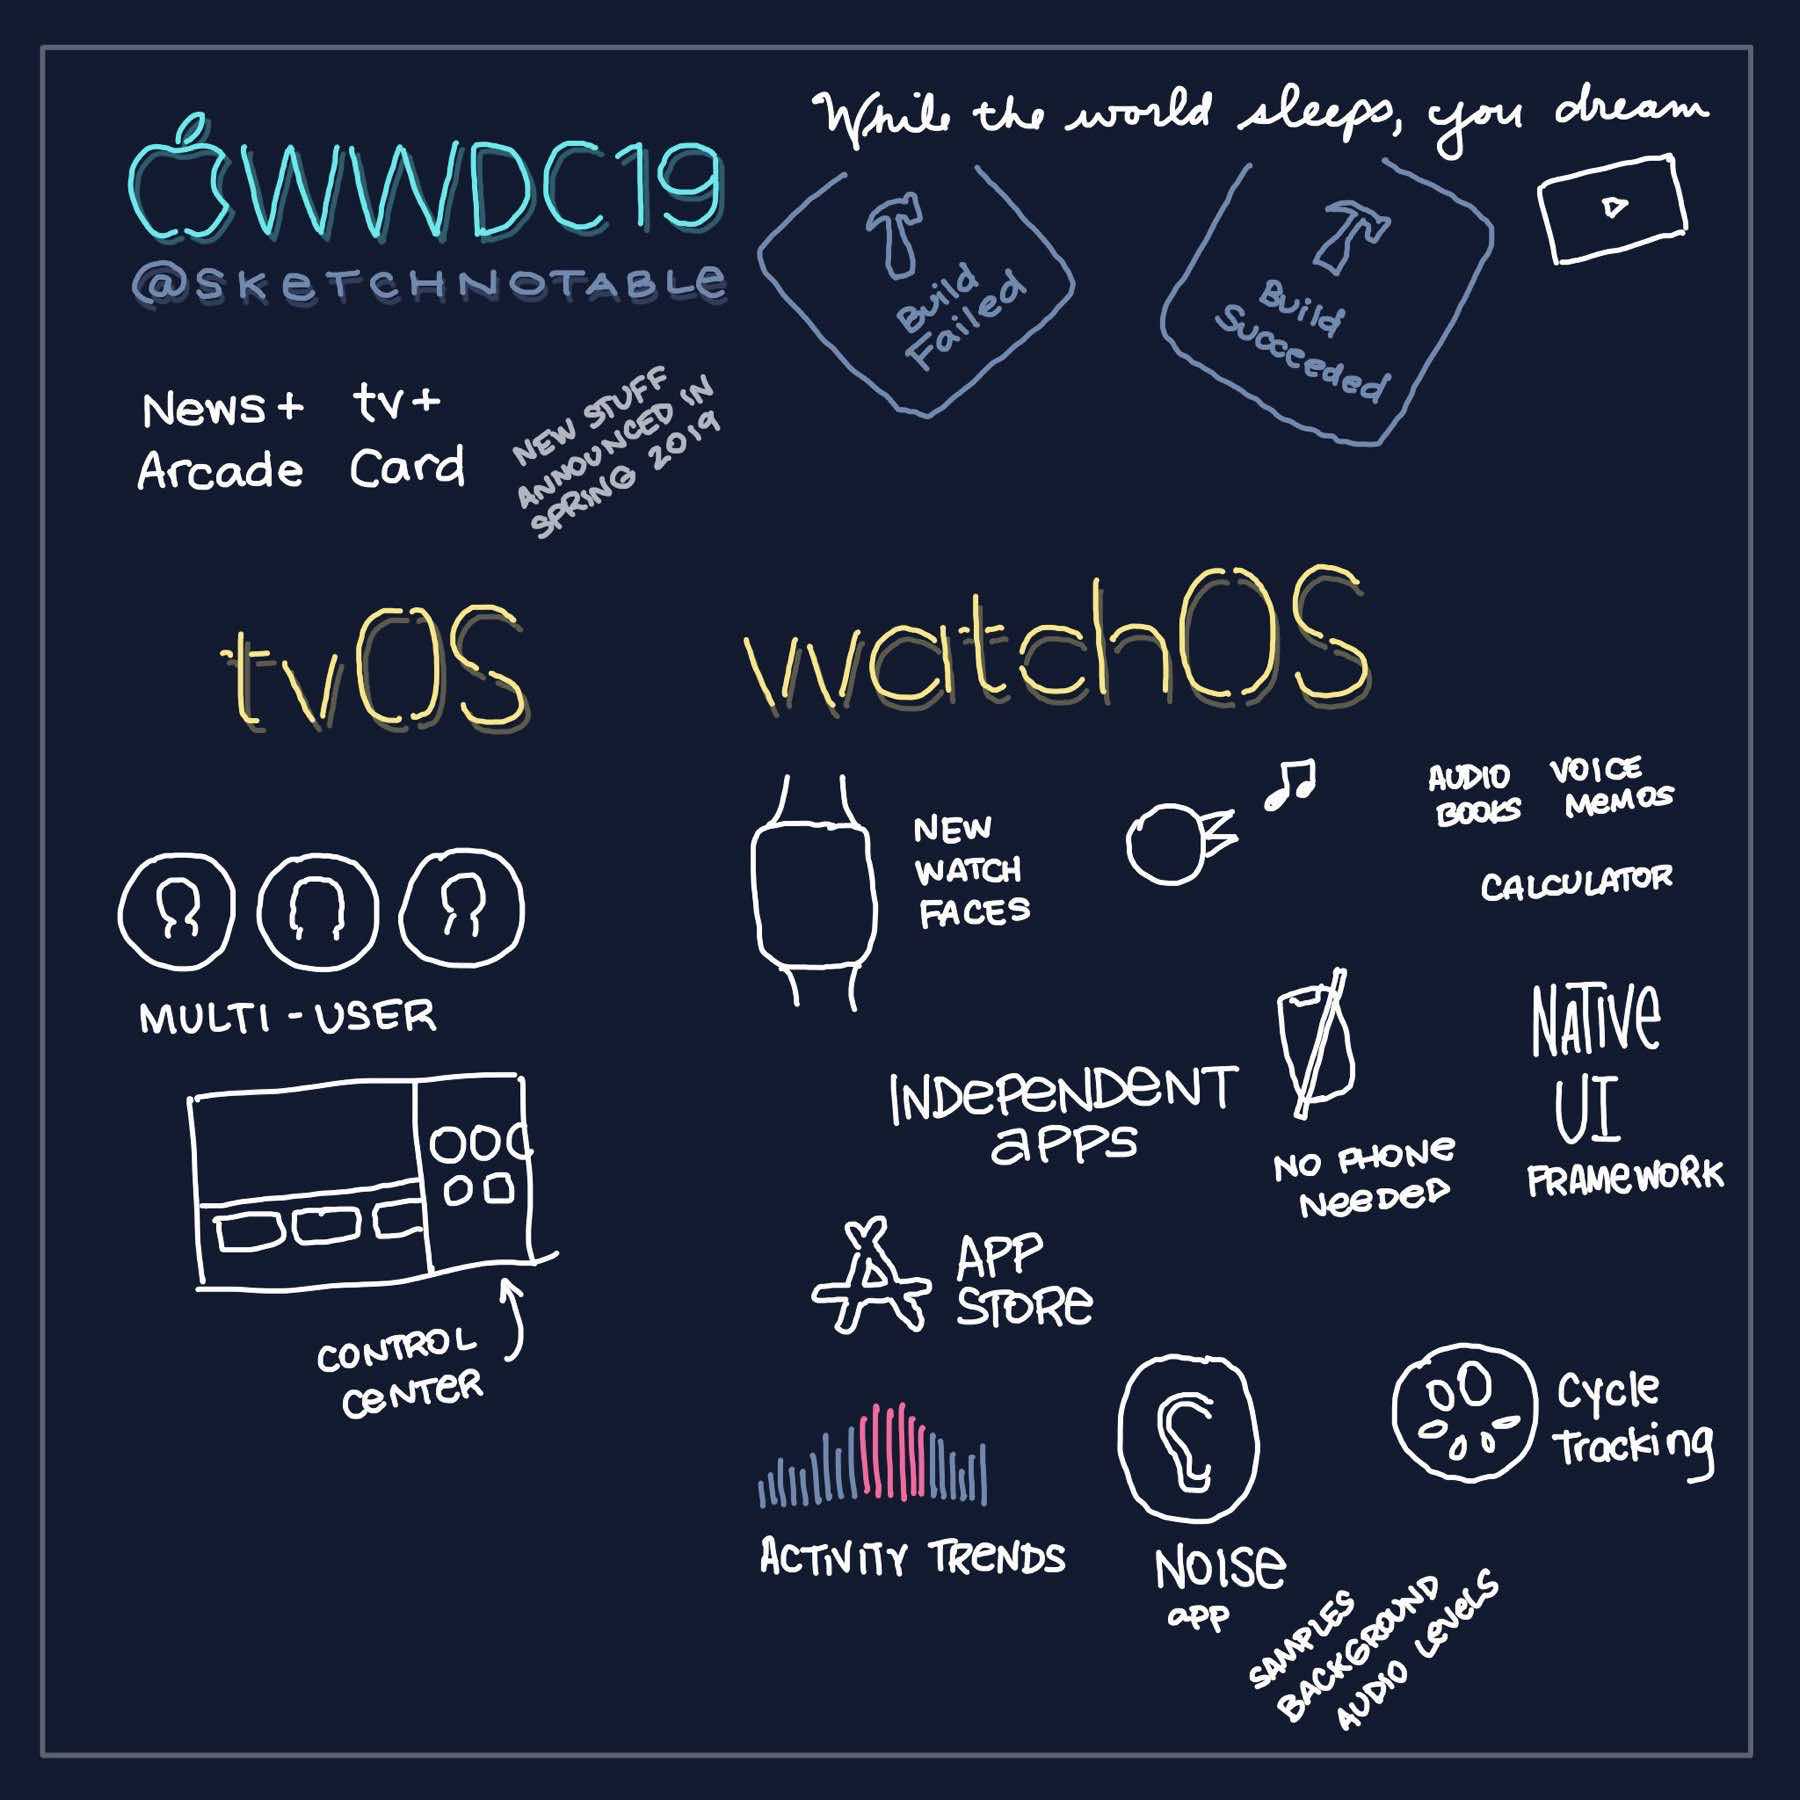 WWDC 2019 Sketchnote